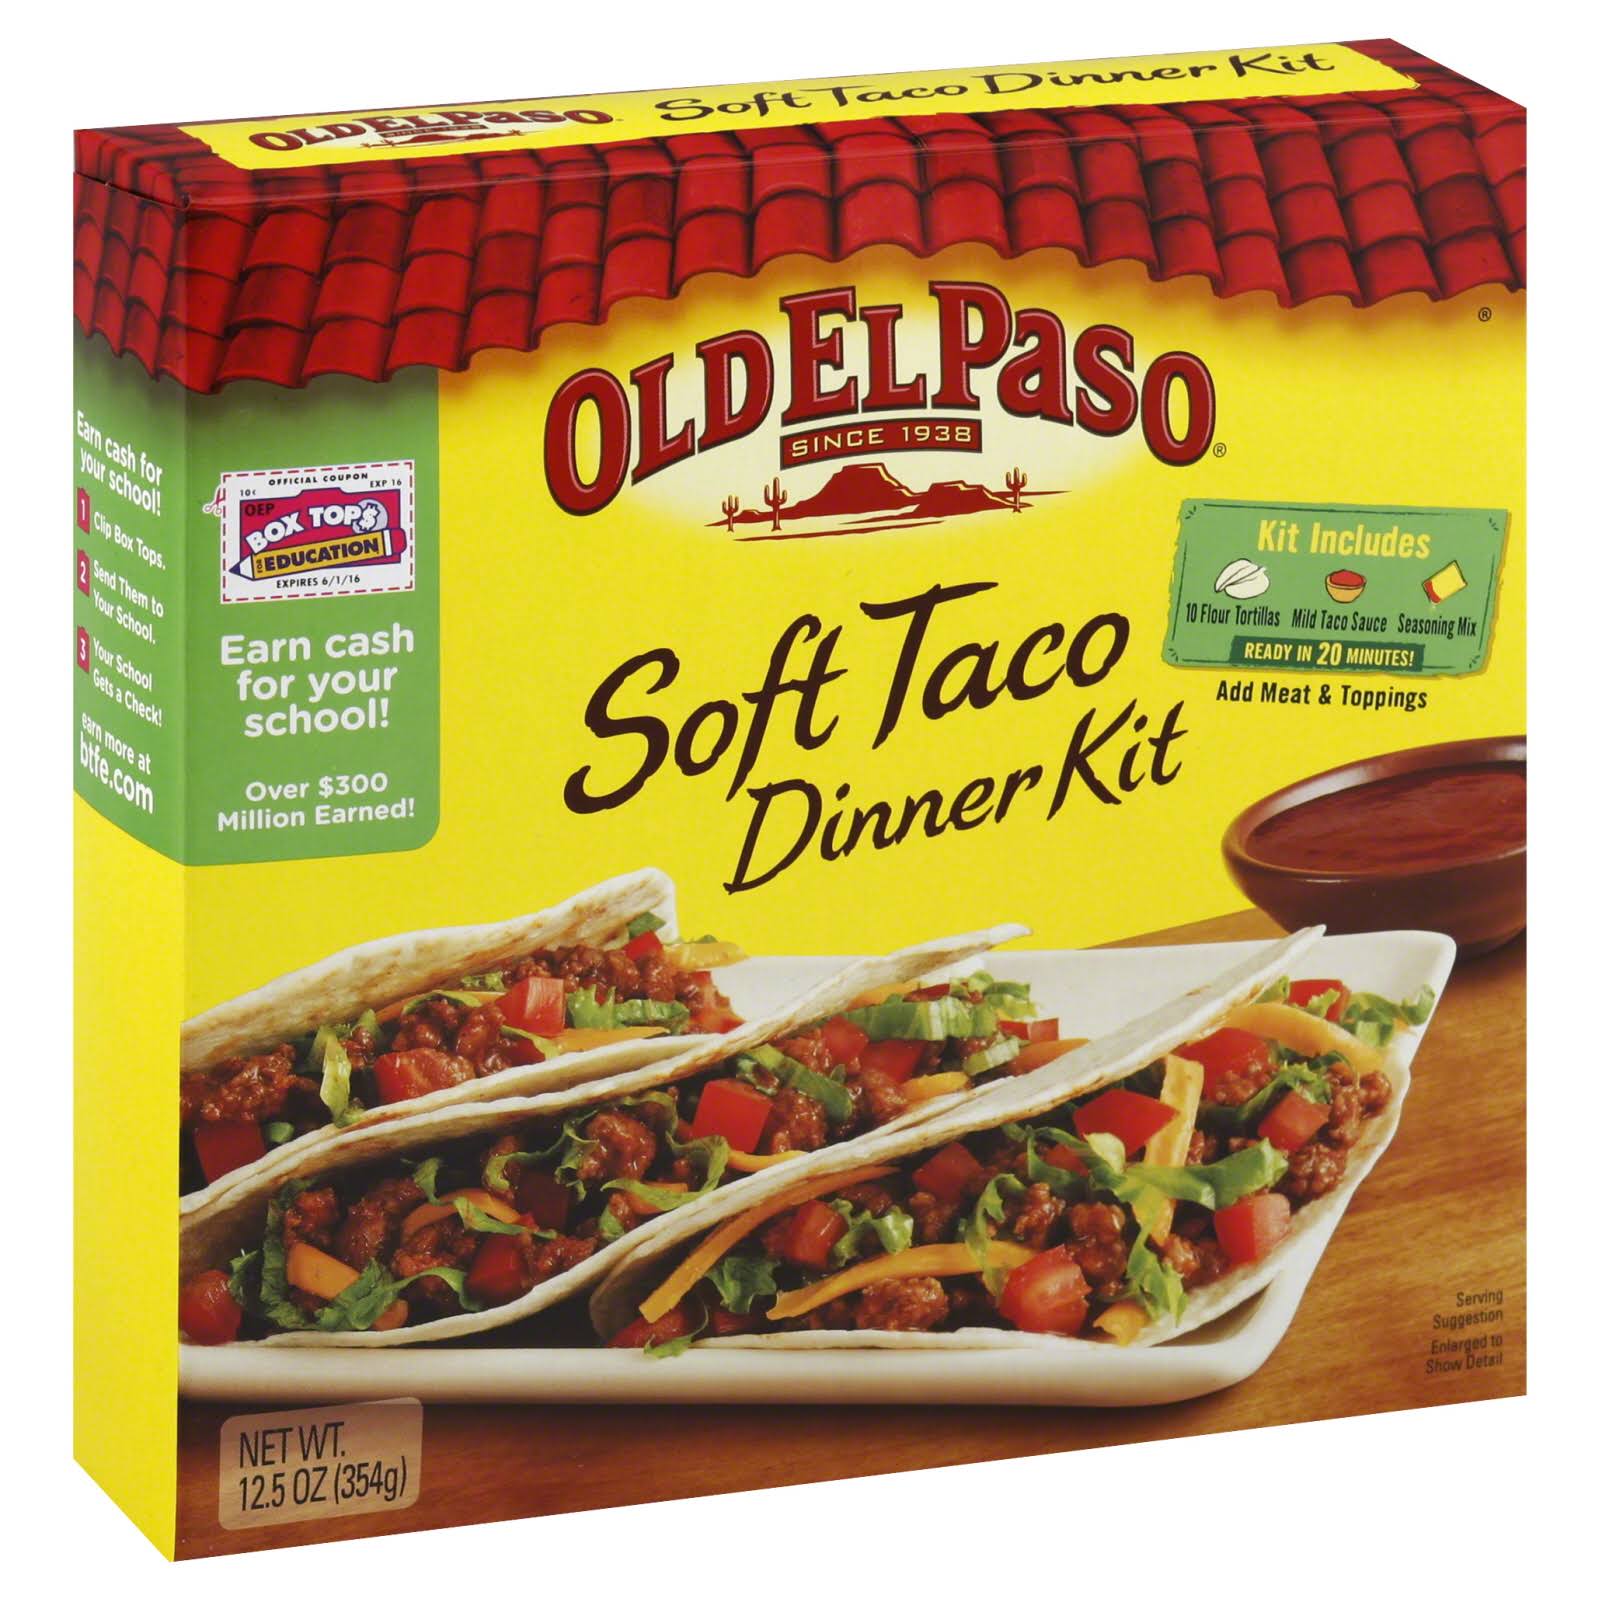 Old El Paso Soft Taco Dinner Kit - 354g